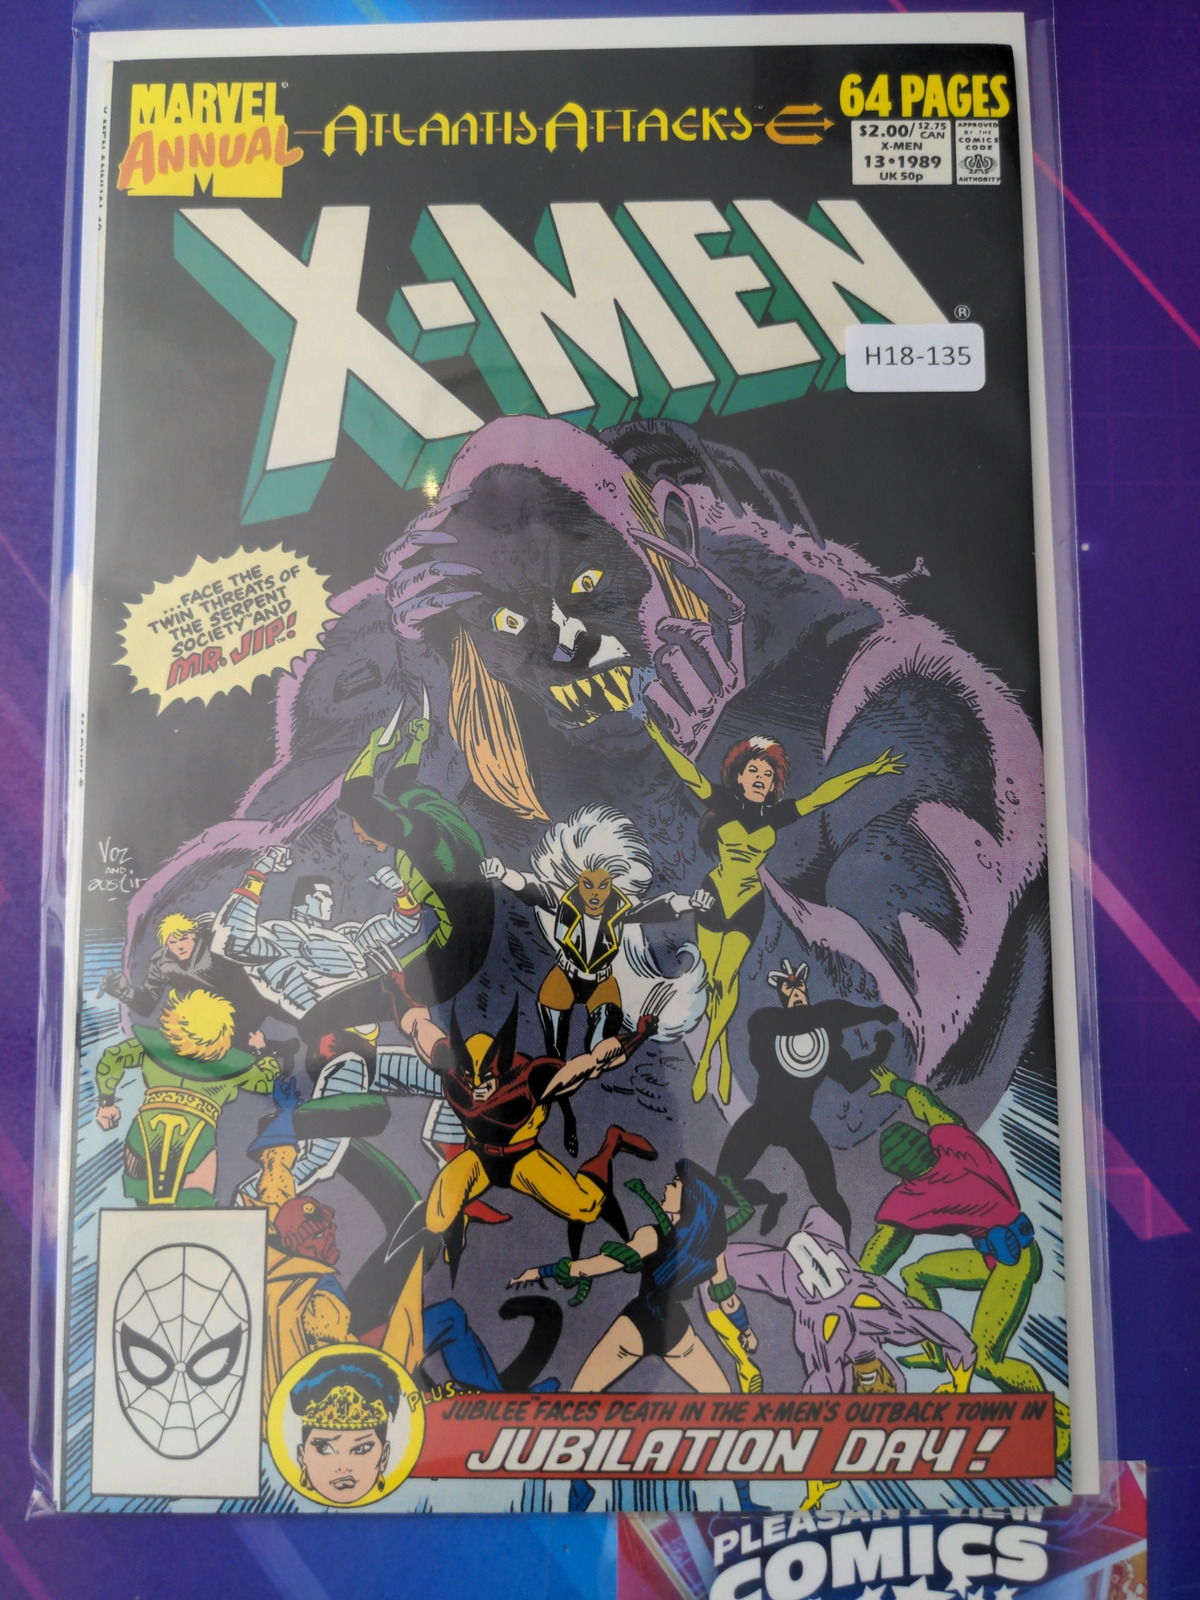 X-MEN ANNUAL #13 VOL. 1 HIGH GRADE MARVEL ANNUAL BOOK H18-135